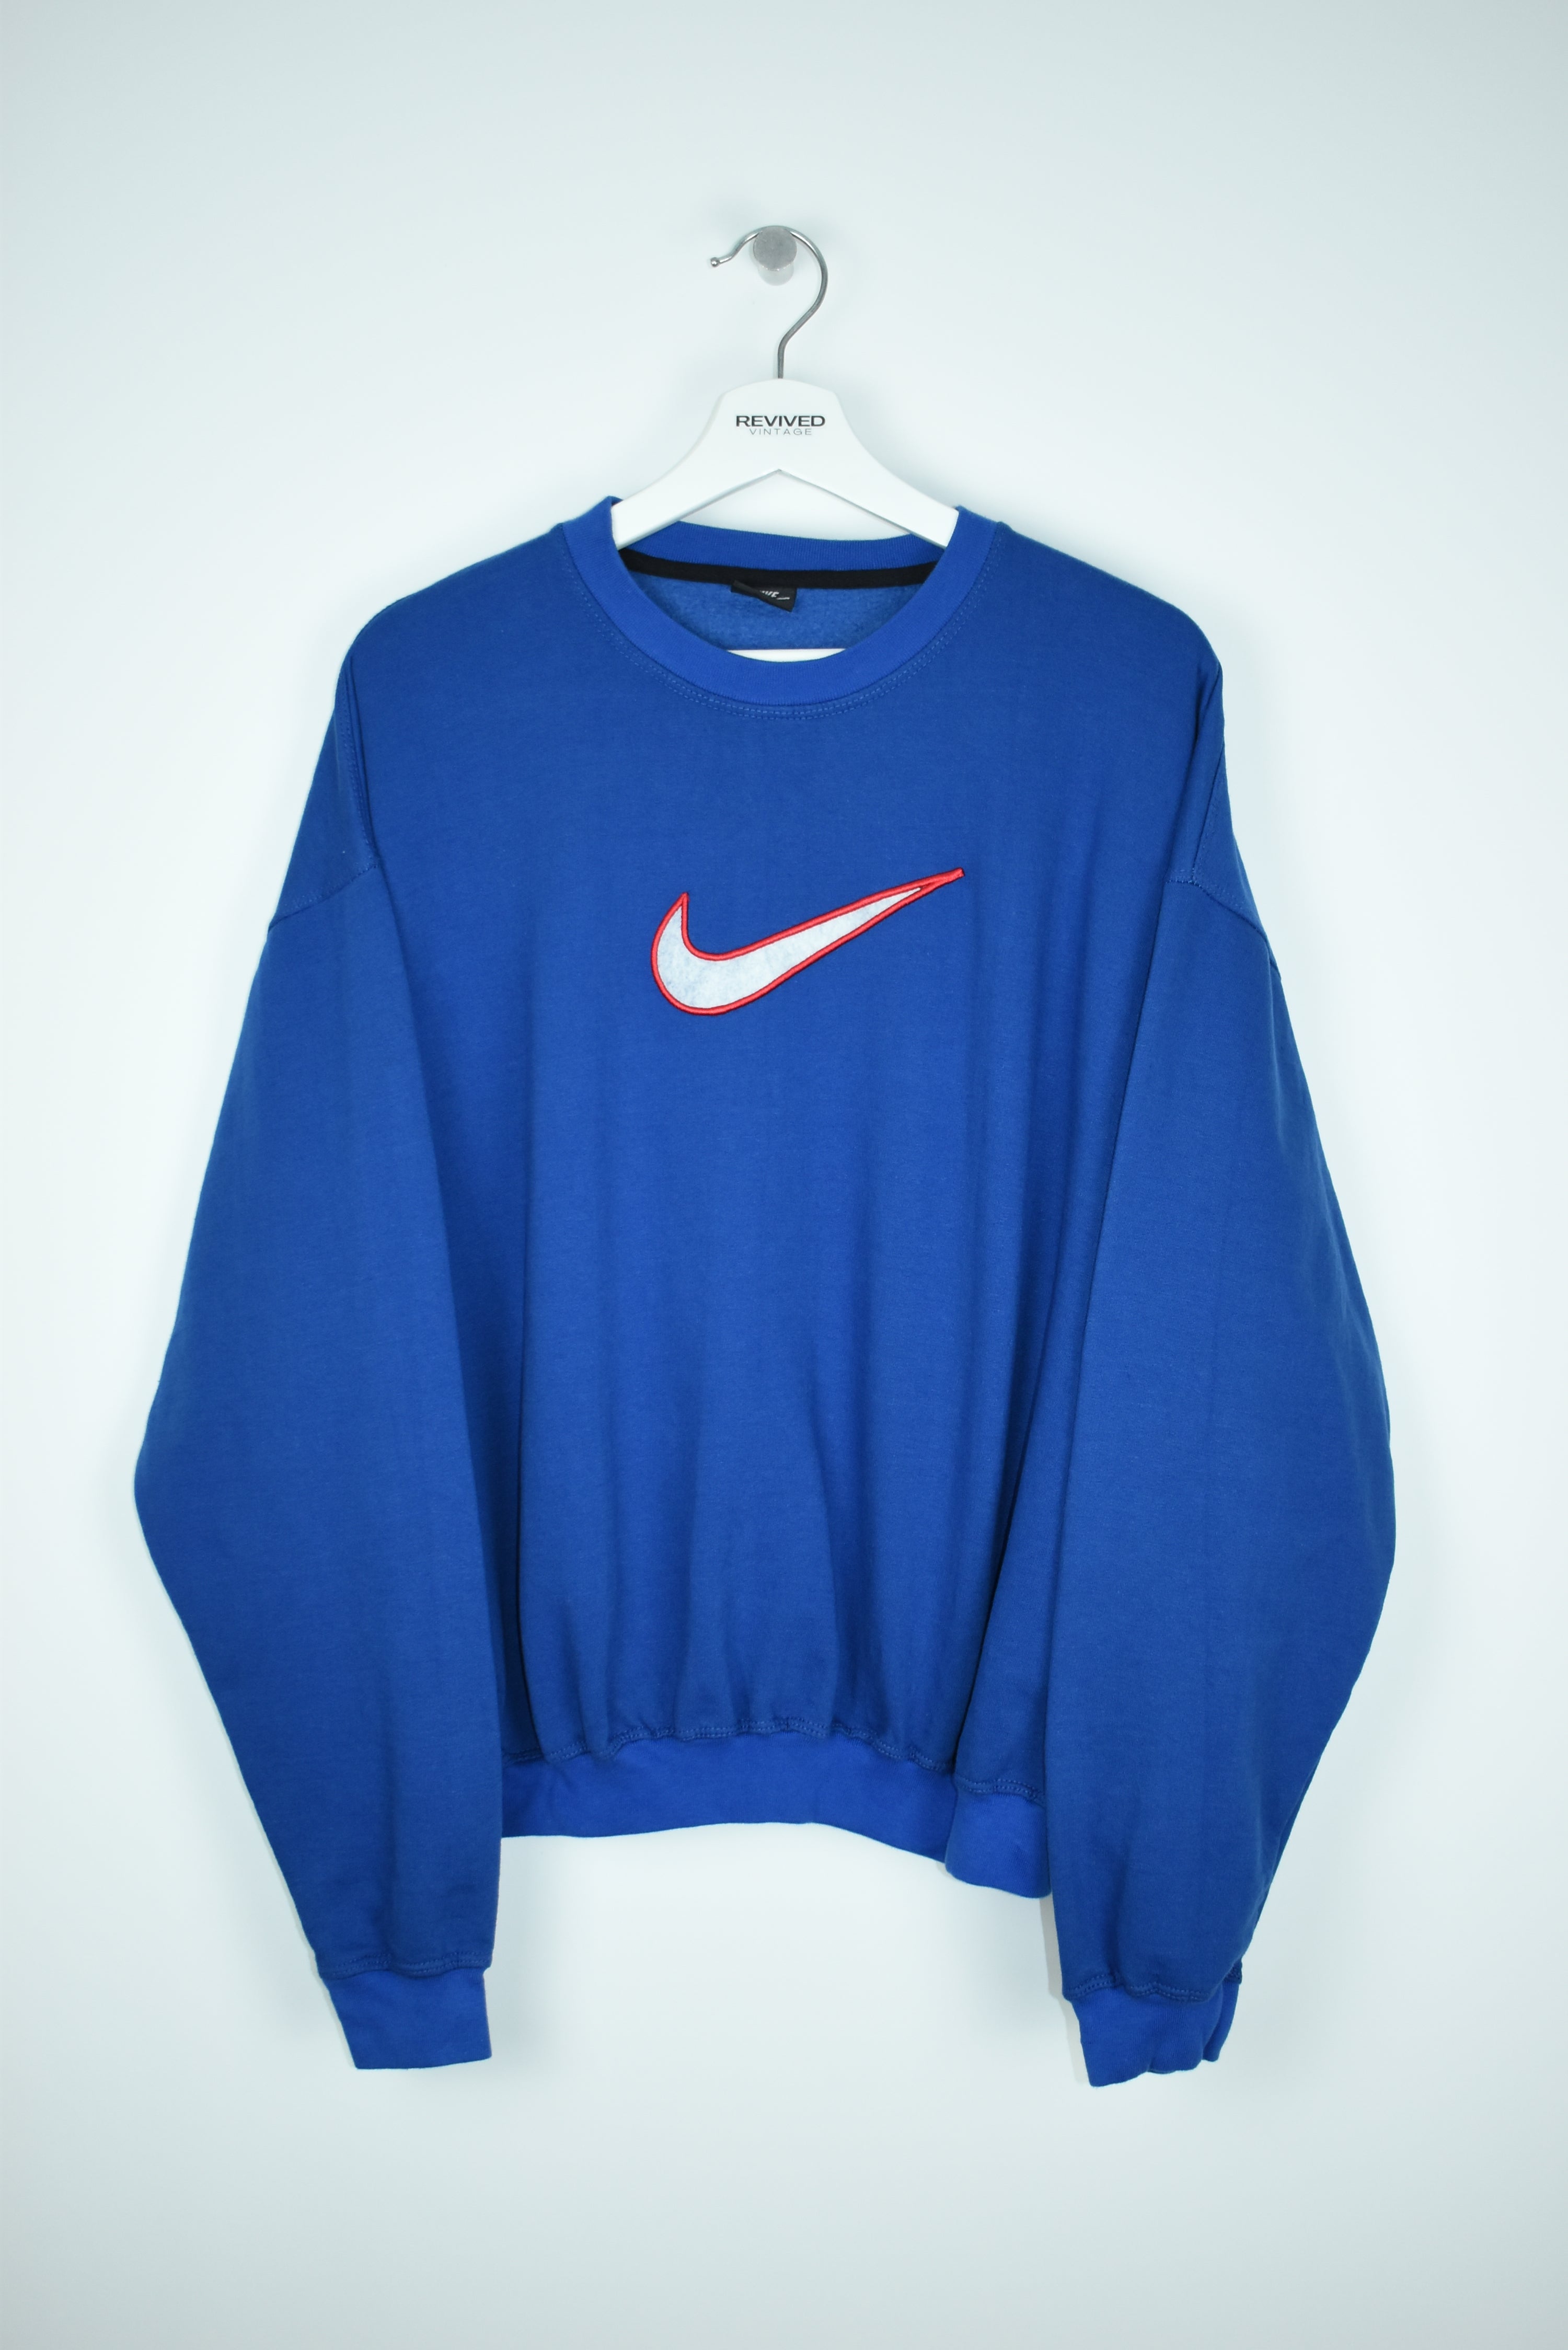 Vintage Nike Embroidered Swoosh Sweatshirt Blue Medium